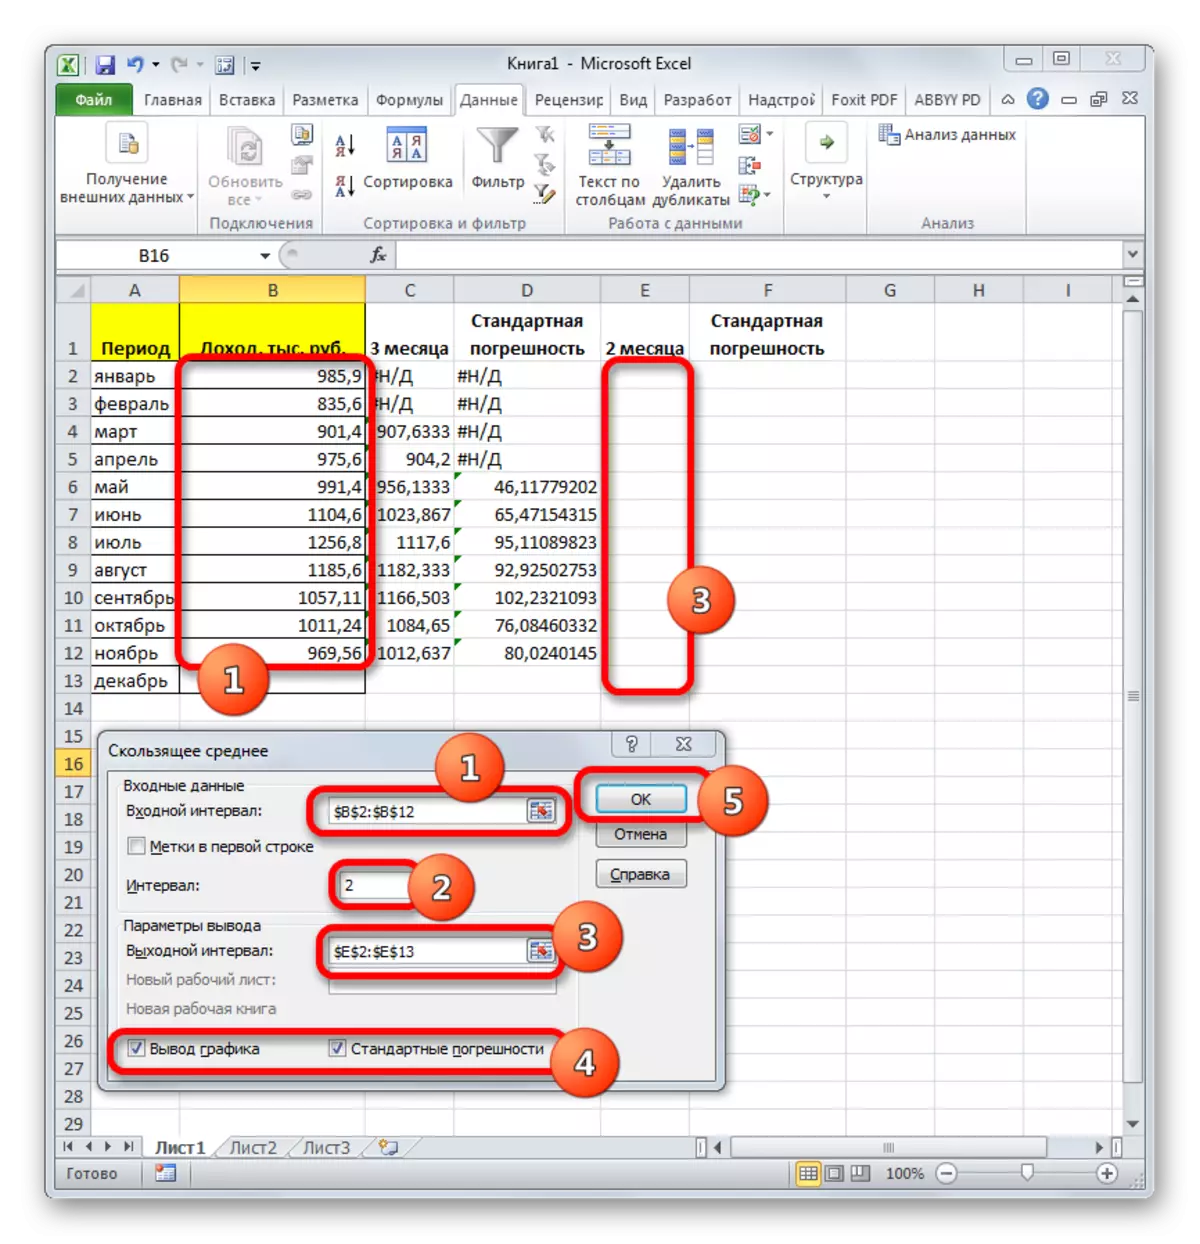 Microsoft Excel dasturida ma'lumotlarni tahlil qilish vositasi ORMON